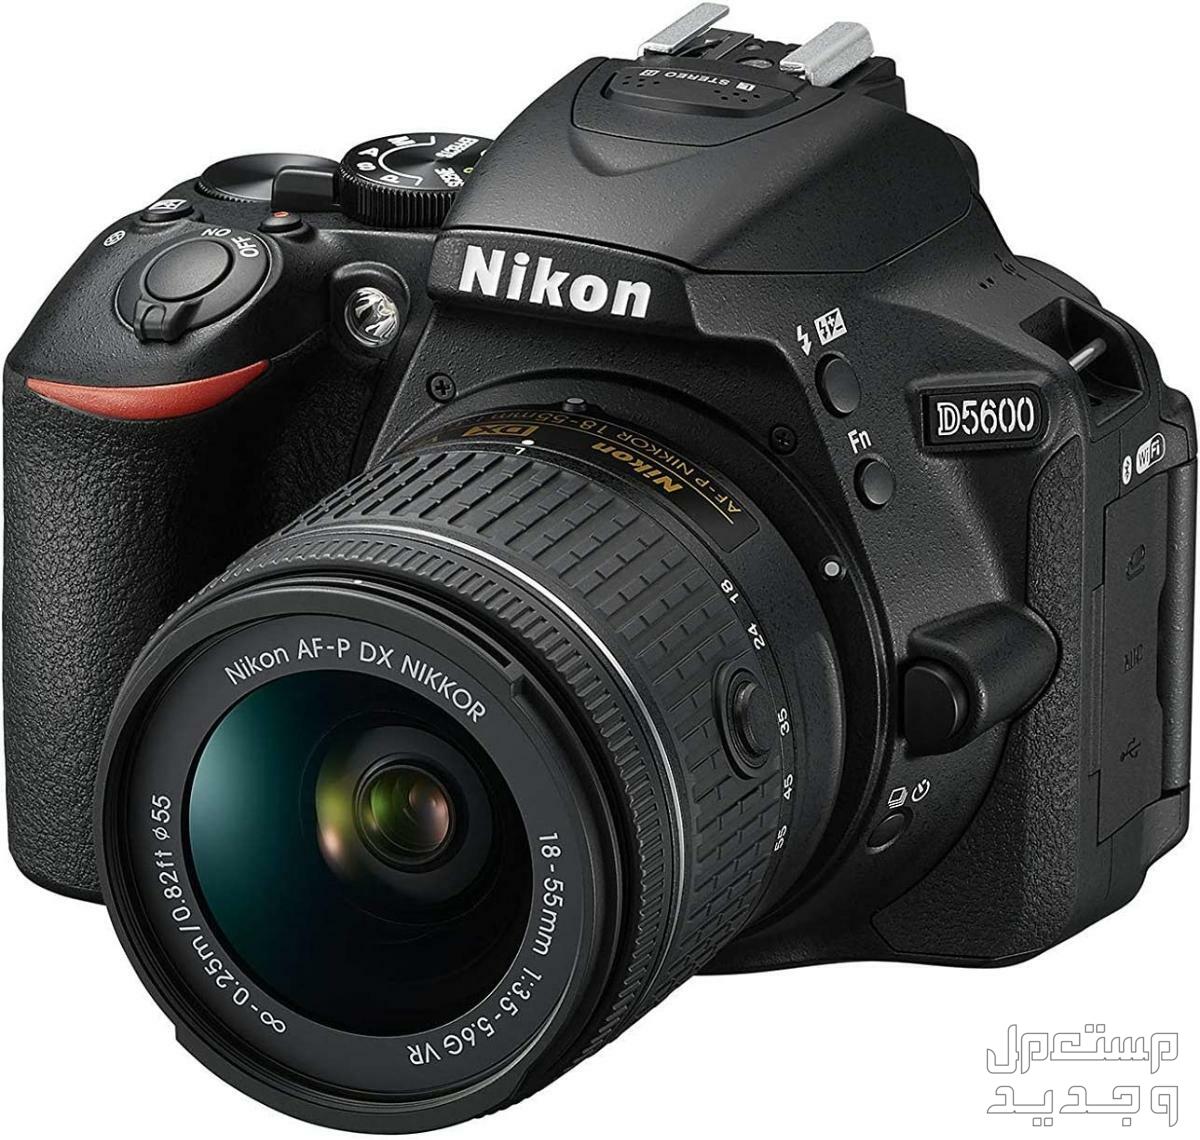 10 كاميرات تصوير ماركات عالمية بأسعار رخيصة في اليَمَن كاميرا Nikon D5600